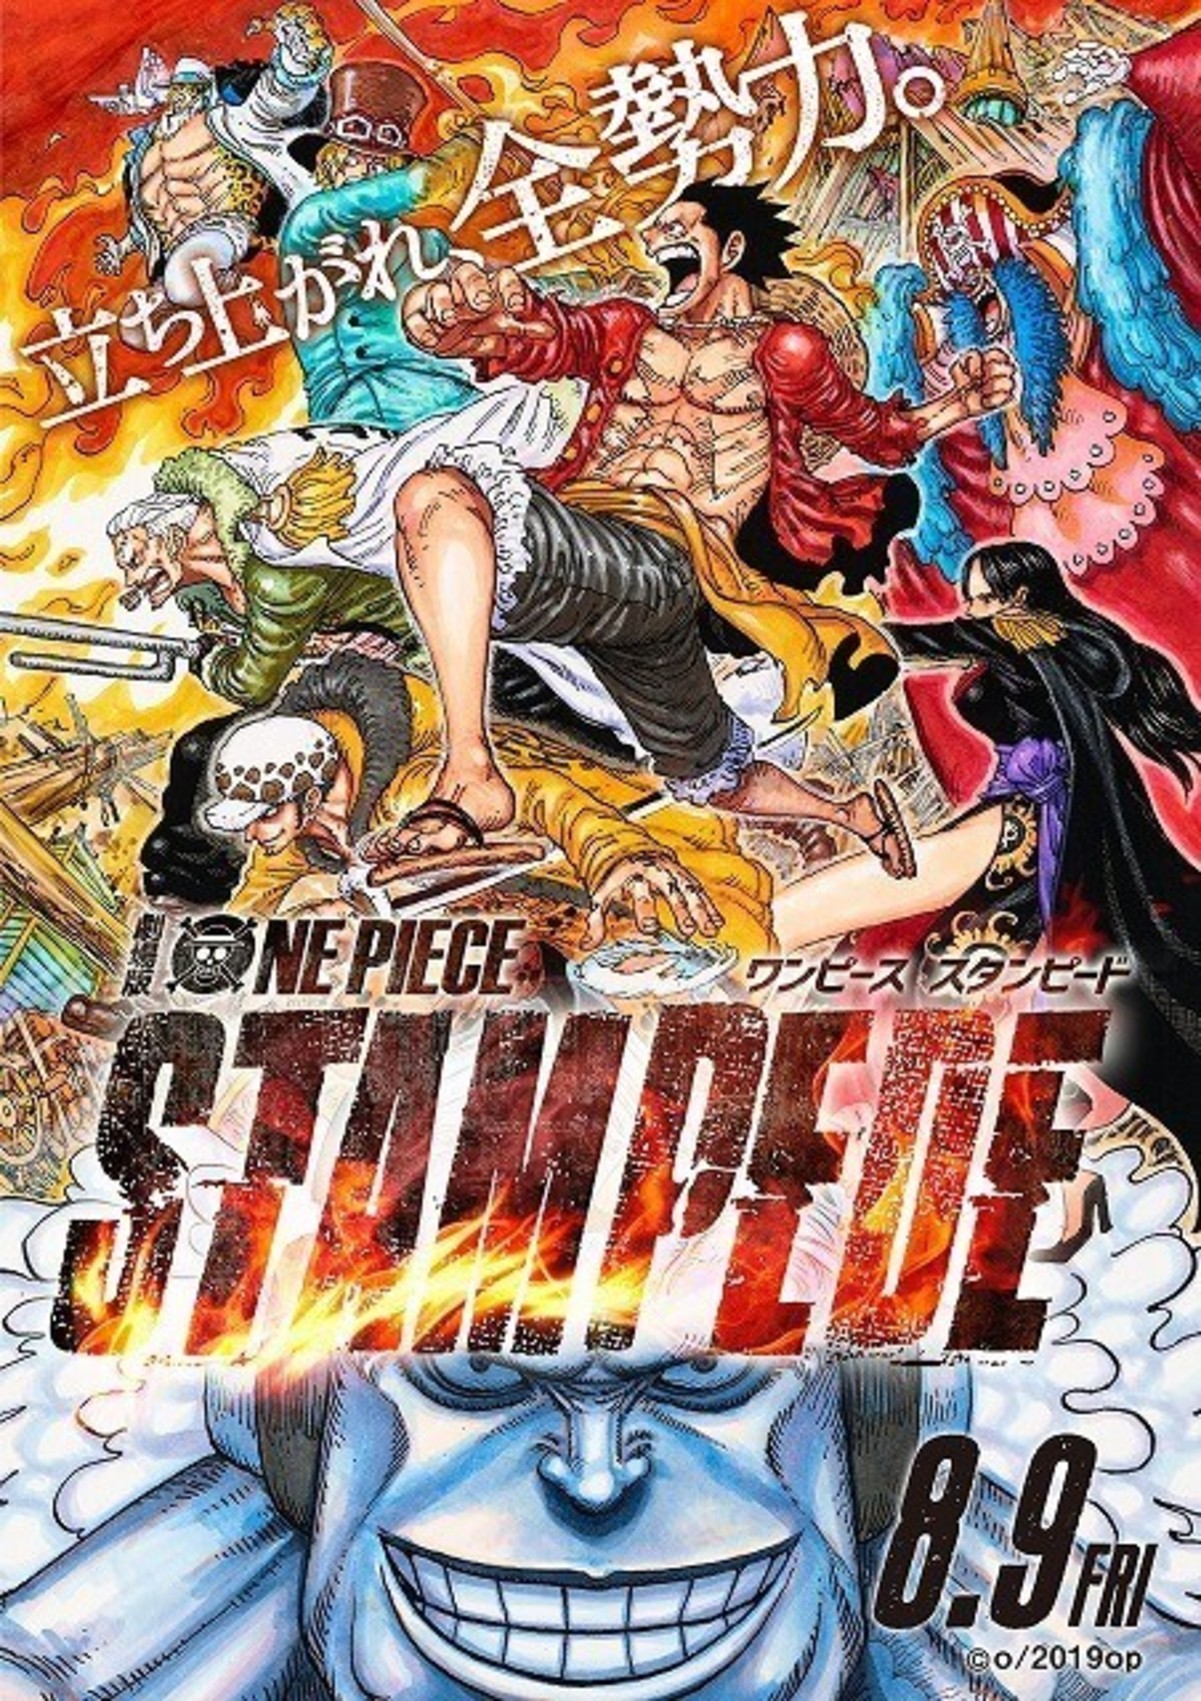 尾田栄一郎が描き下ろし One Piece Stampede ポスターでオールスター共闘 映画ニュース 映画 Com